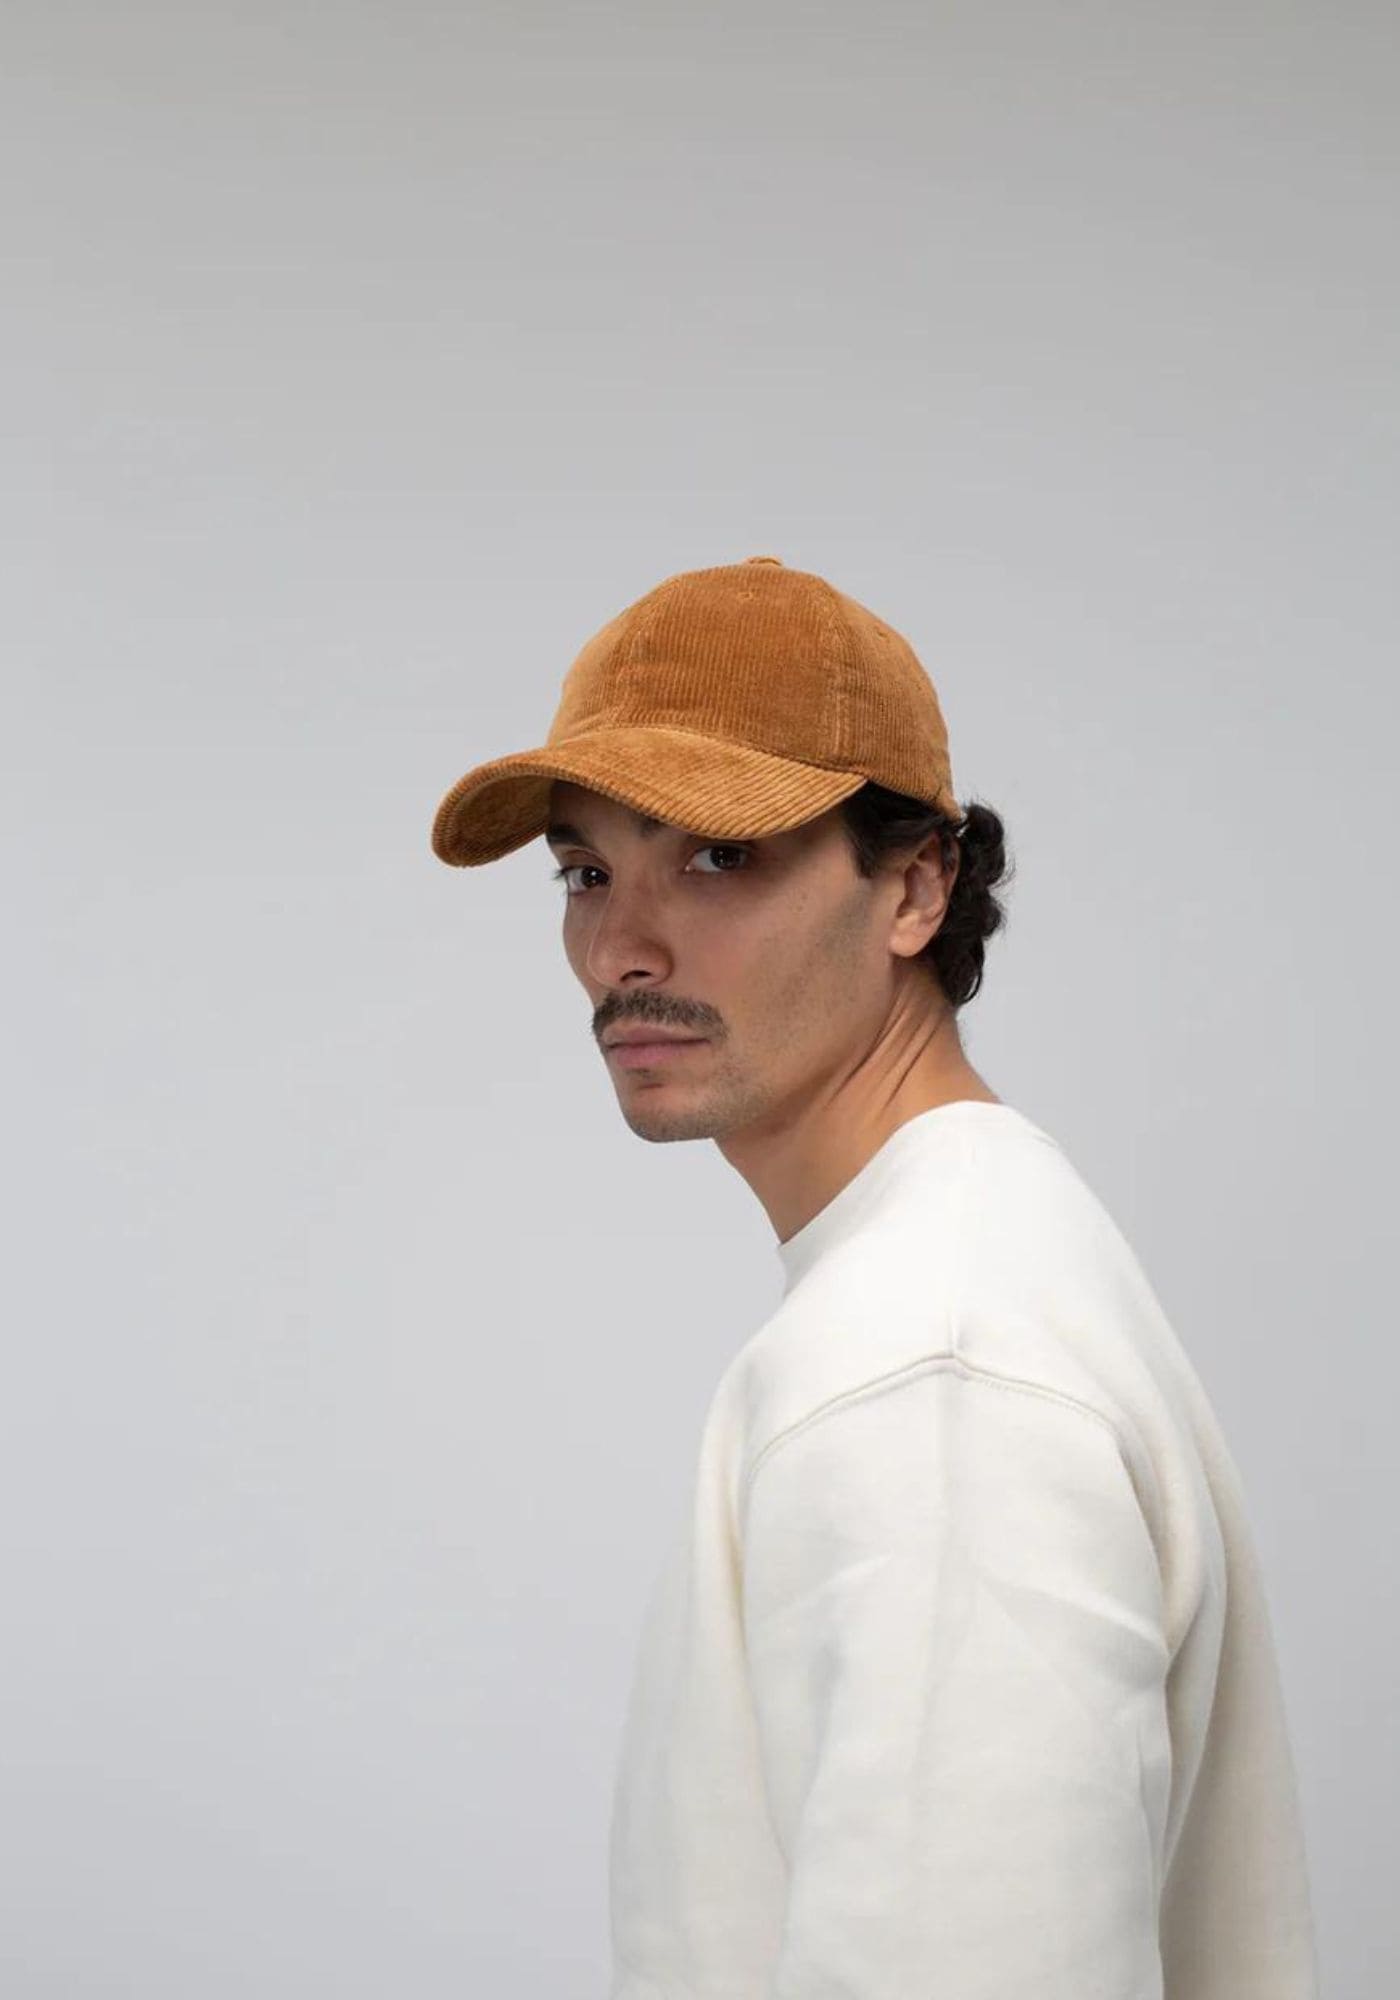 L'homme porte la casquette en velours camel de chez Côtelé Paris